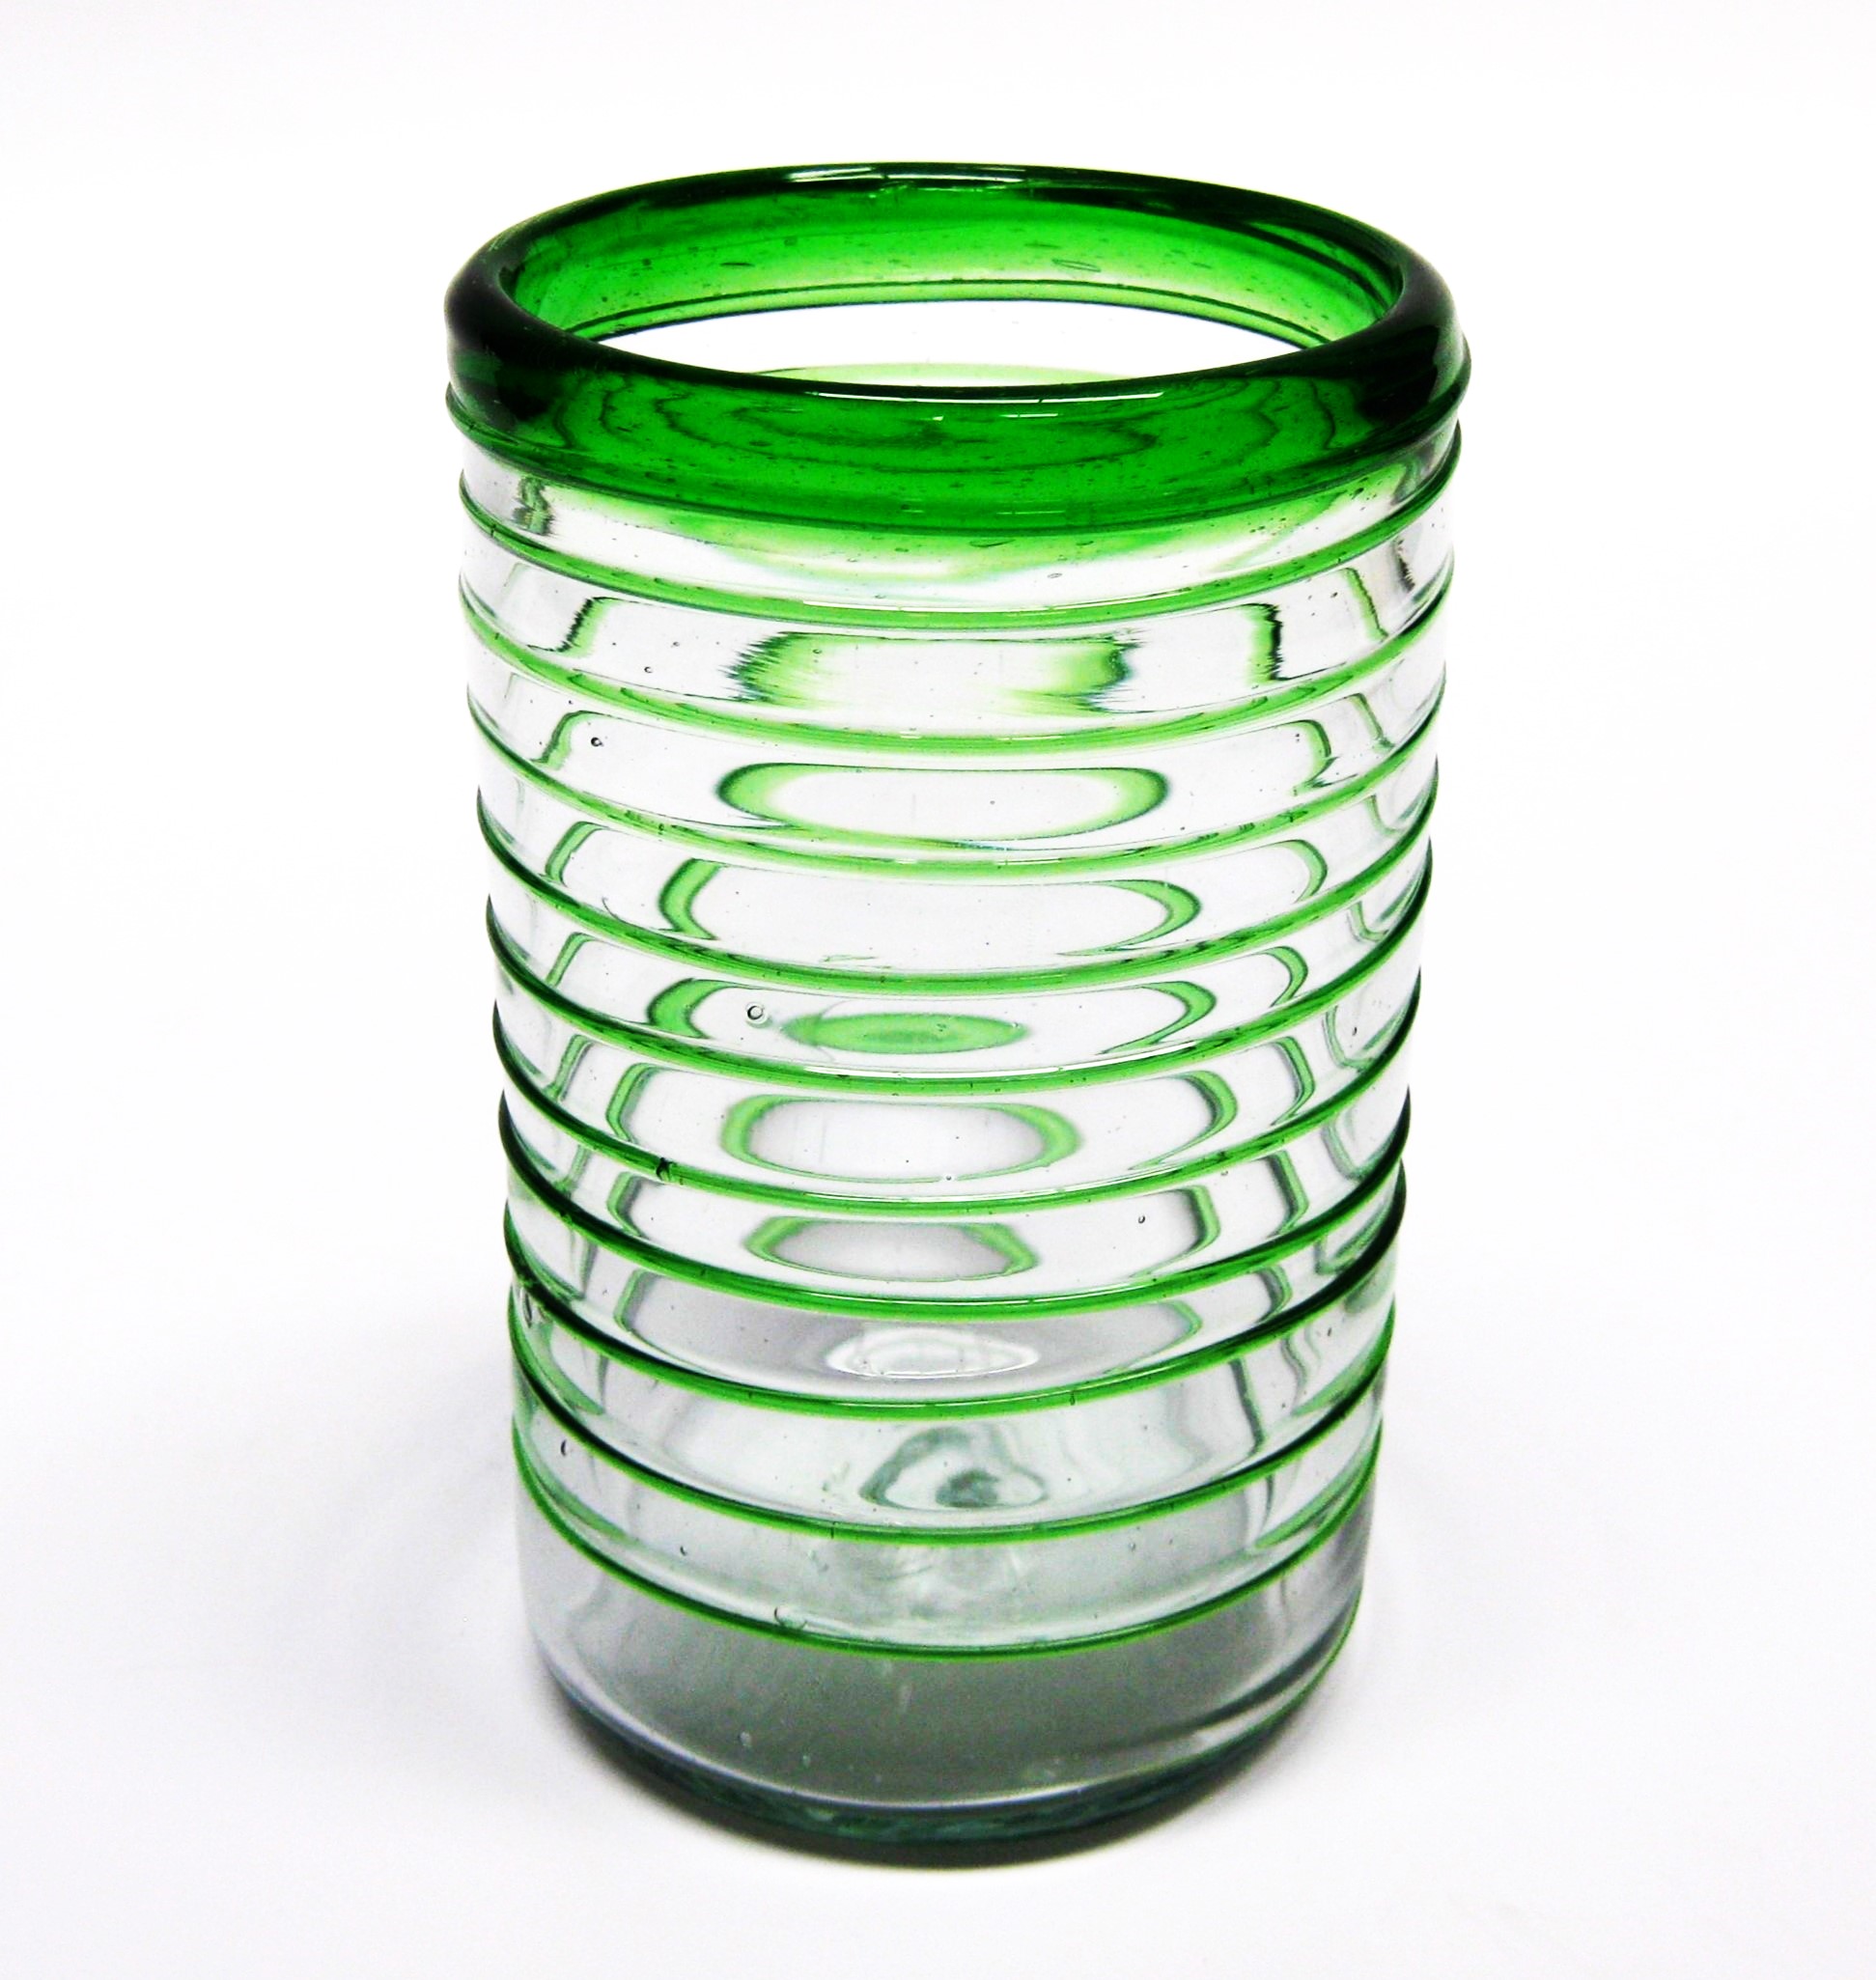 Ofertas / vasos grandes con espiral verde esmeralda / Éstos elegantes vasos cubiertos con una espiral verde esmeralda darán un toque artesanal a su mesa.